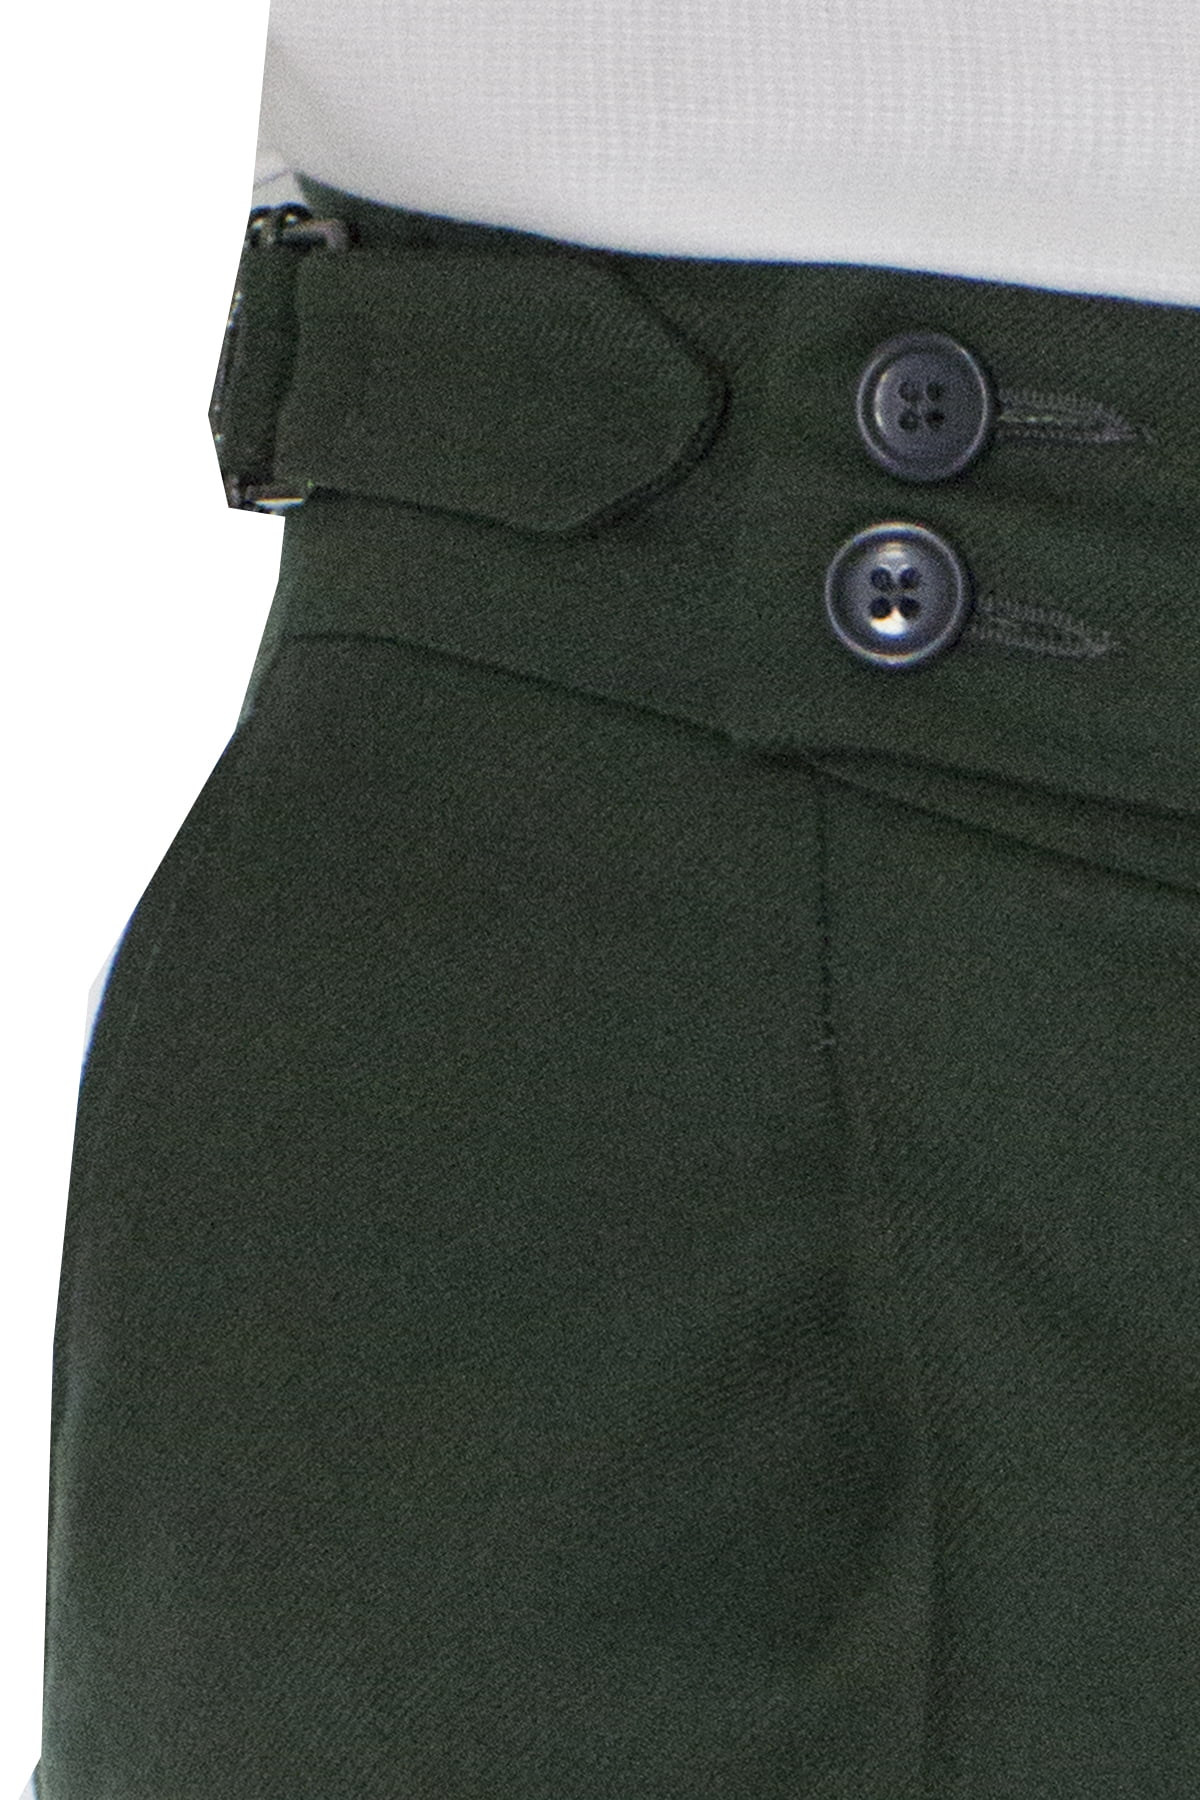 Pantalone uomo militare in lana tinta unita vita alta con pinces fibbie laterali e risvolto 4cm